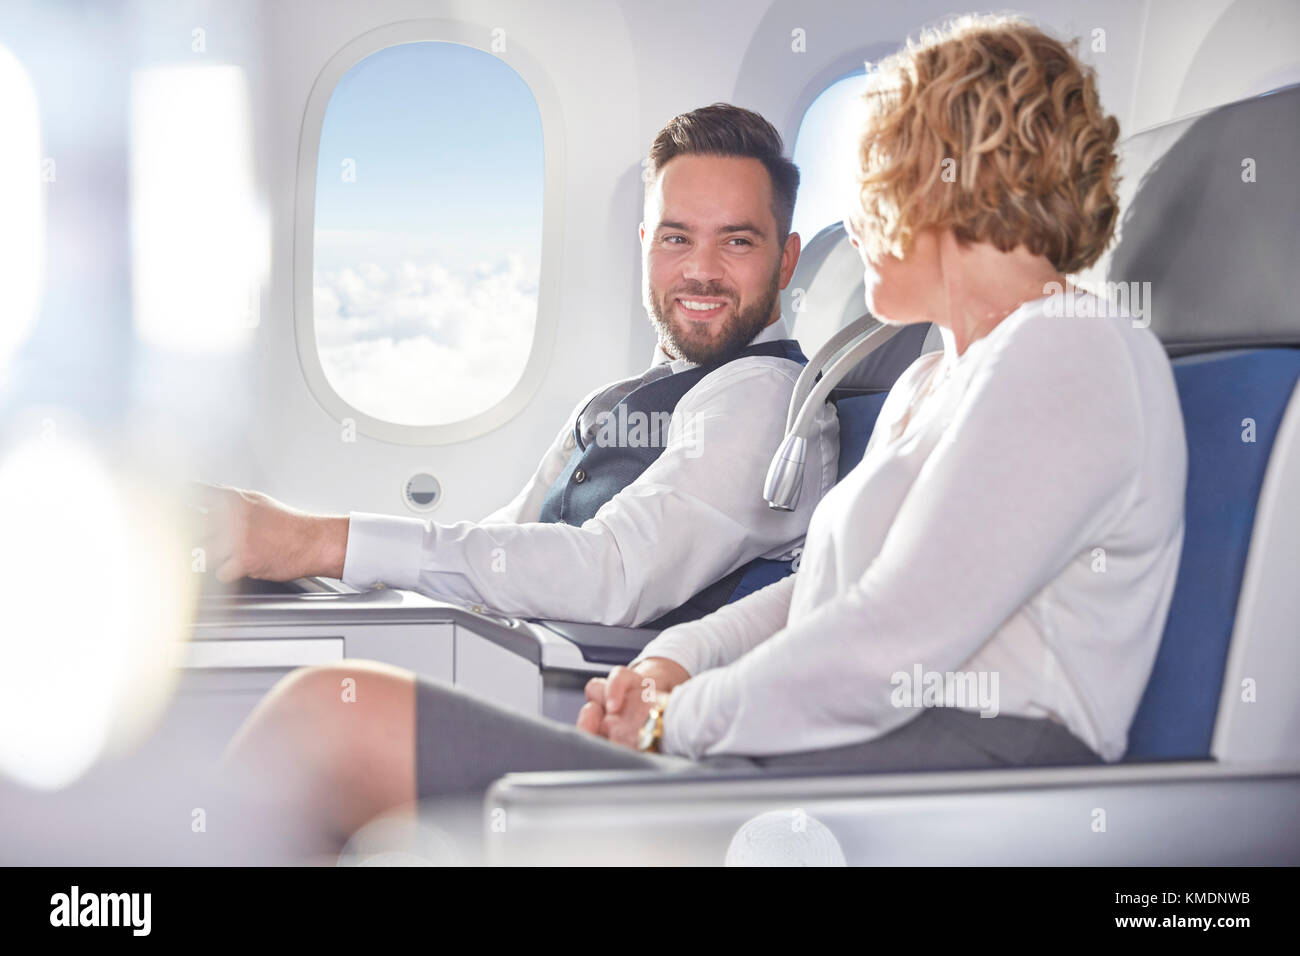 Lächelnder Geschäftsmann und Geschäftsfrau im Flugzeug Stockfoto